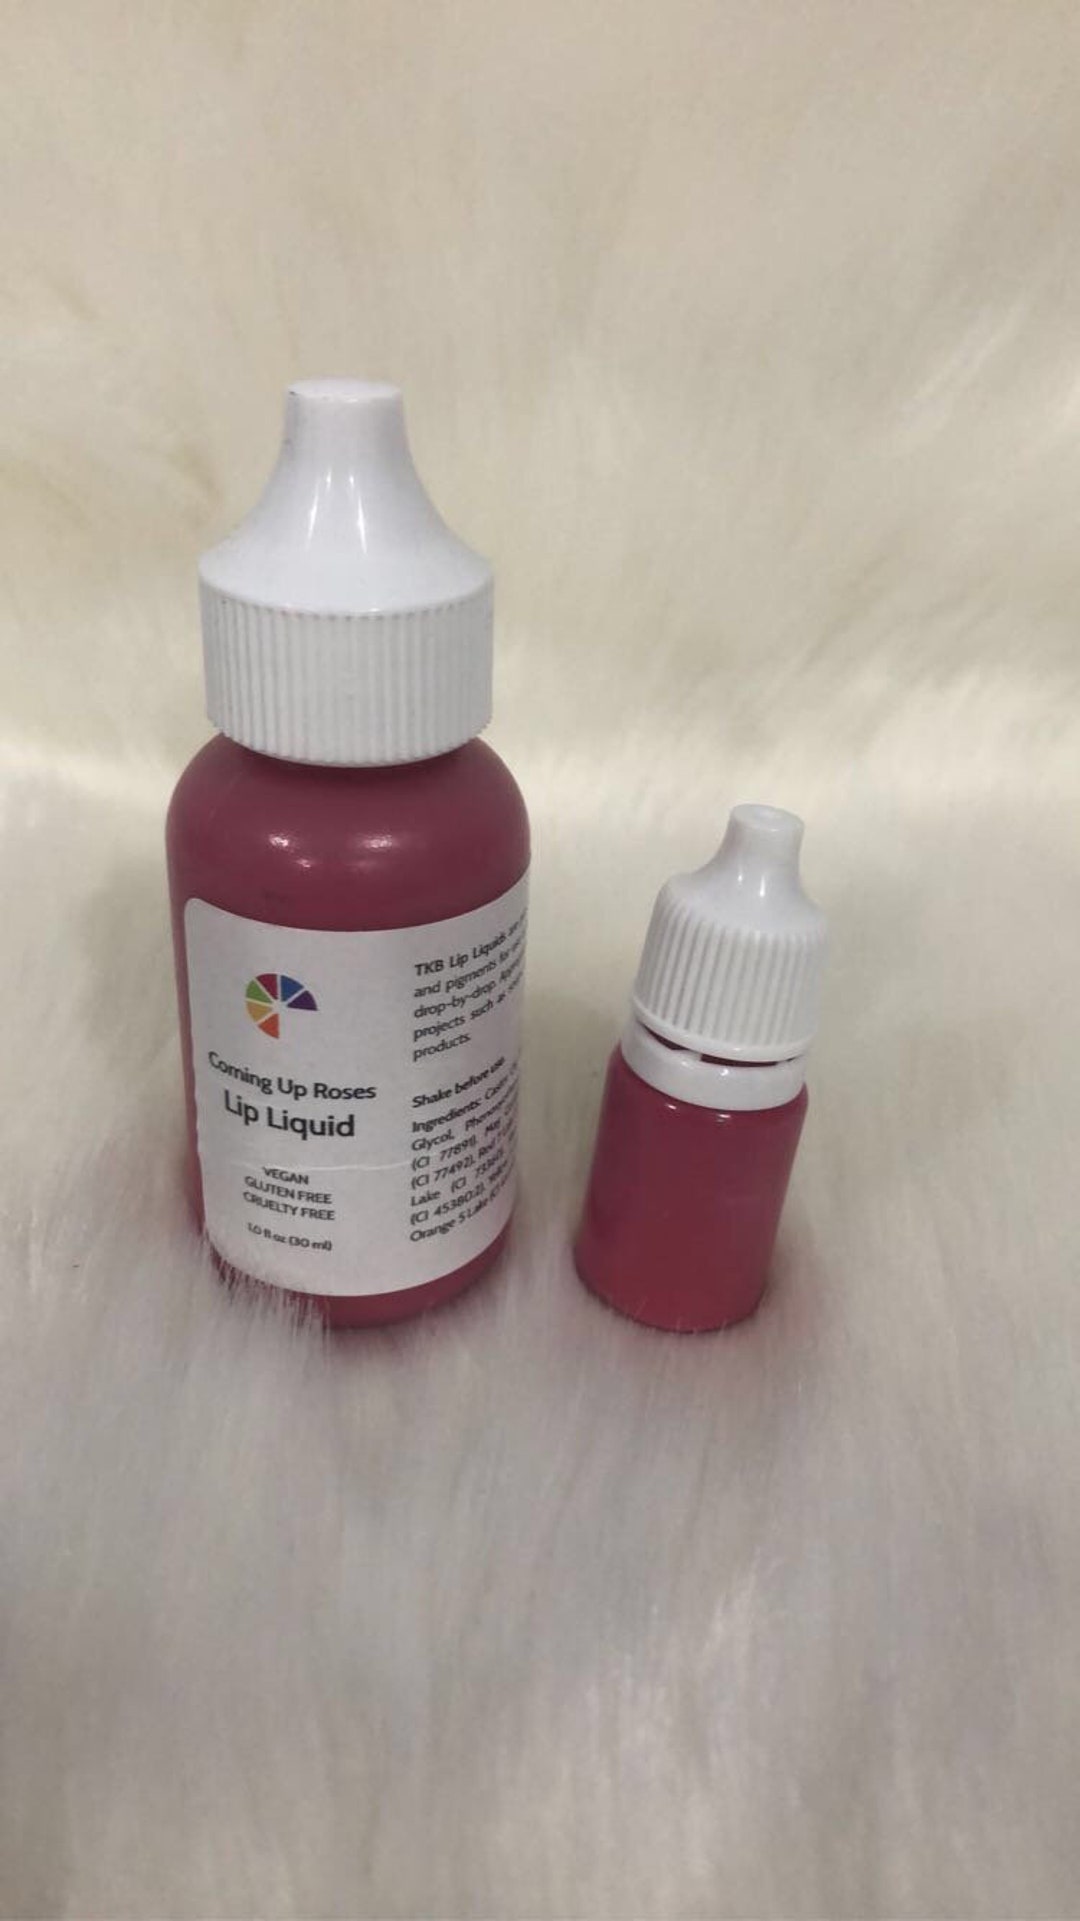 TKB Lip Liquid Pigment 5ml -  UK